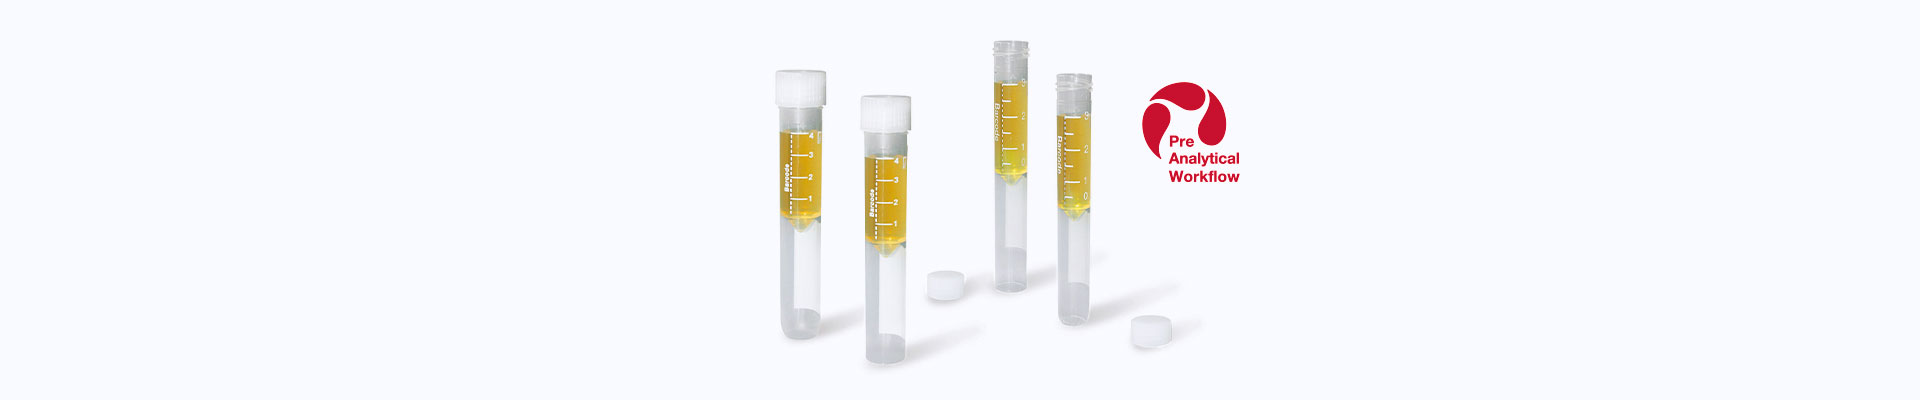 Gran número de tubos secundarios diferentes para el procesamiento de muestras